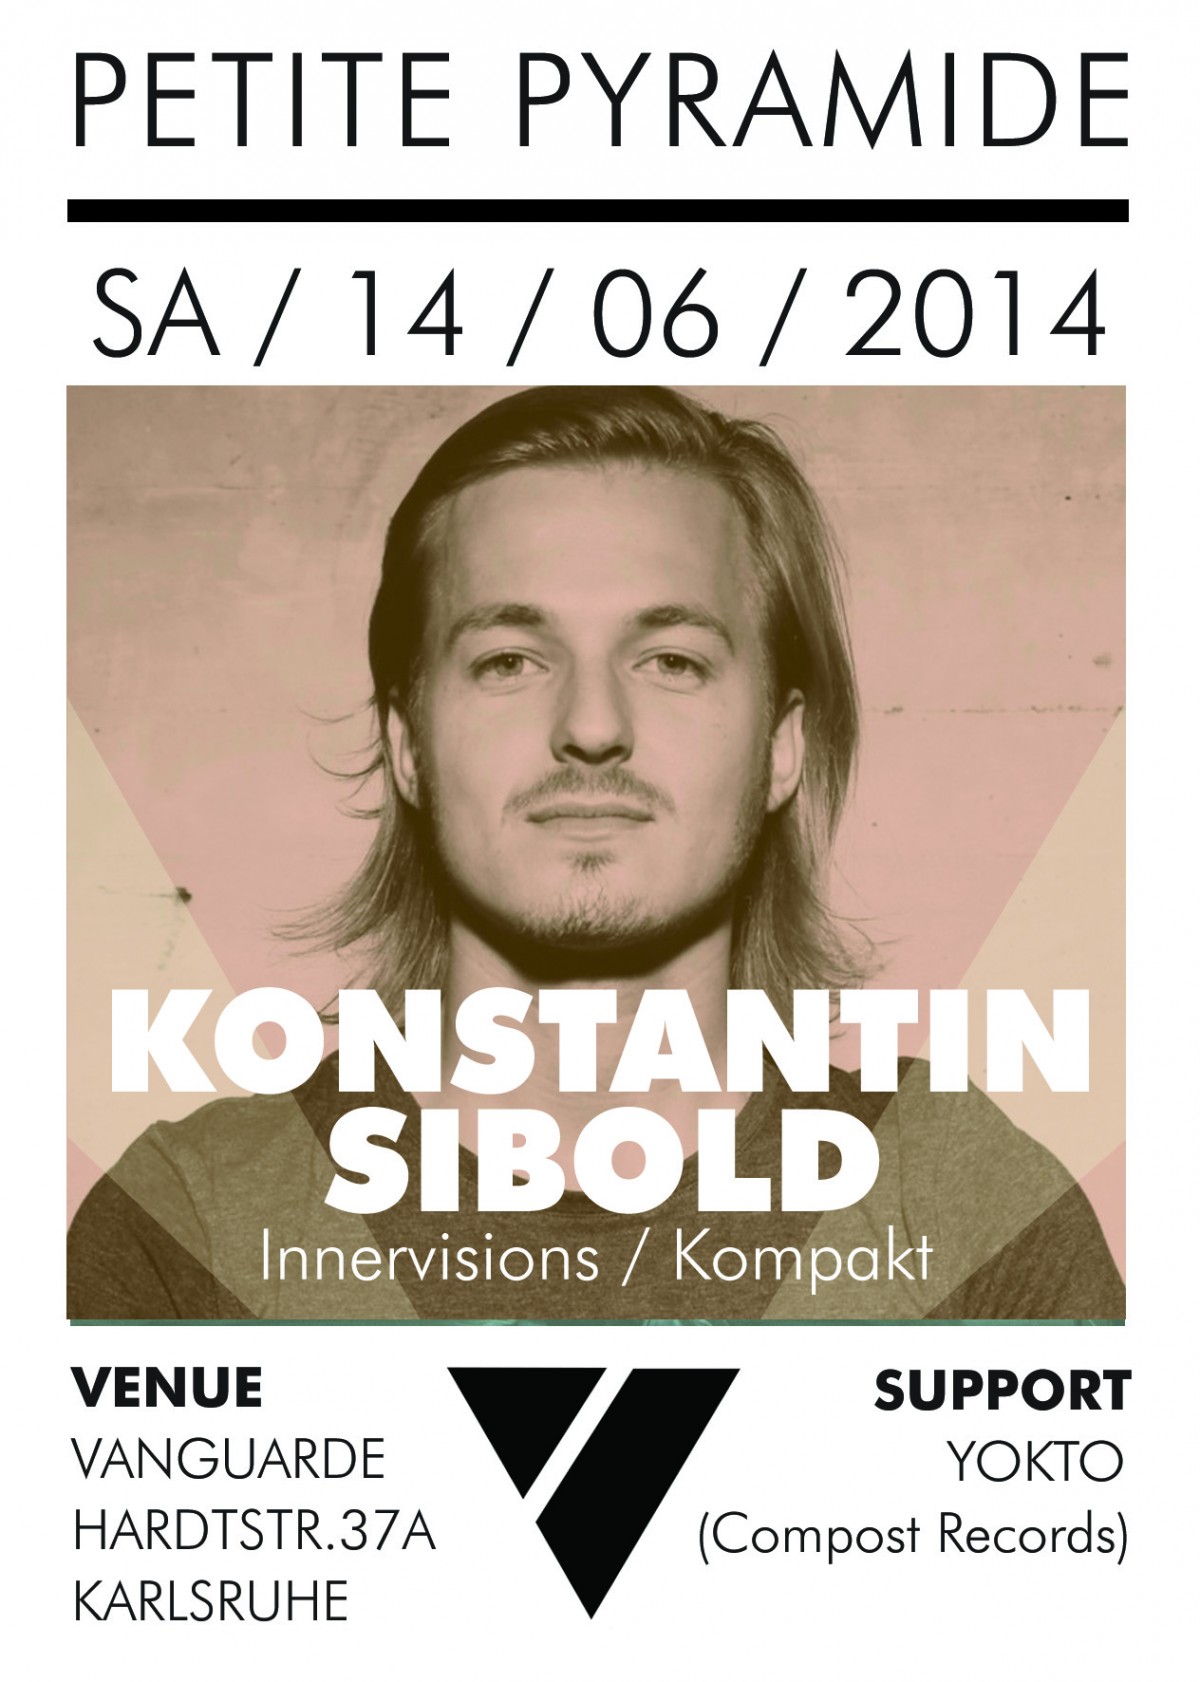 14.06.2014-Konstantin-Sibold-Petite-Pyramide-@-Vanguarde-Karlsruhe